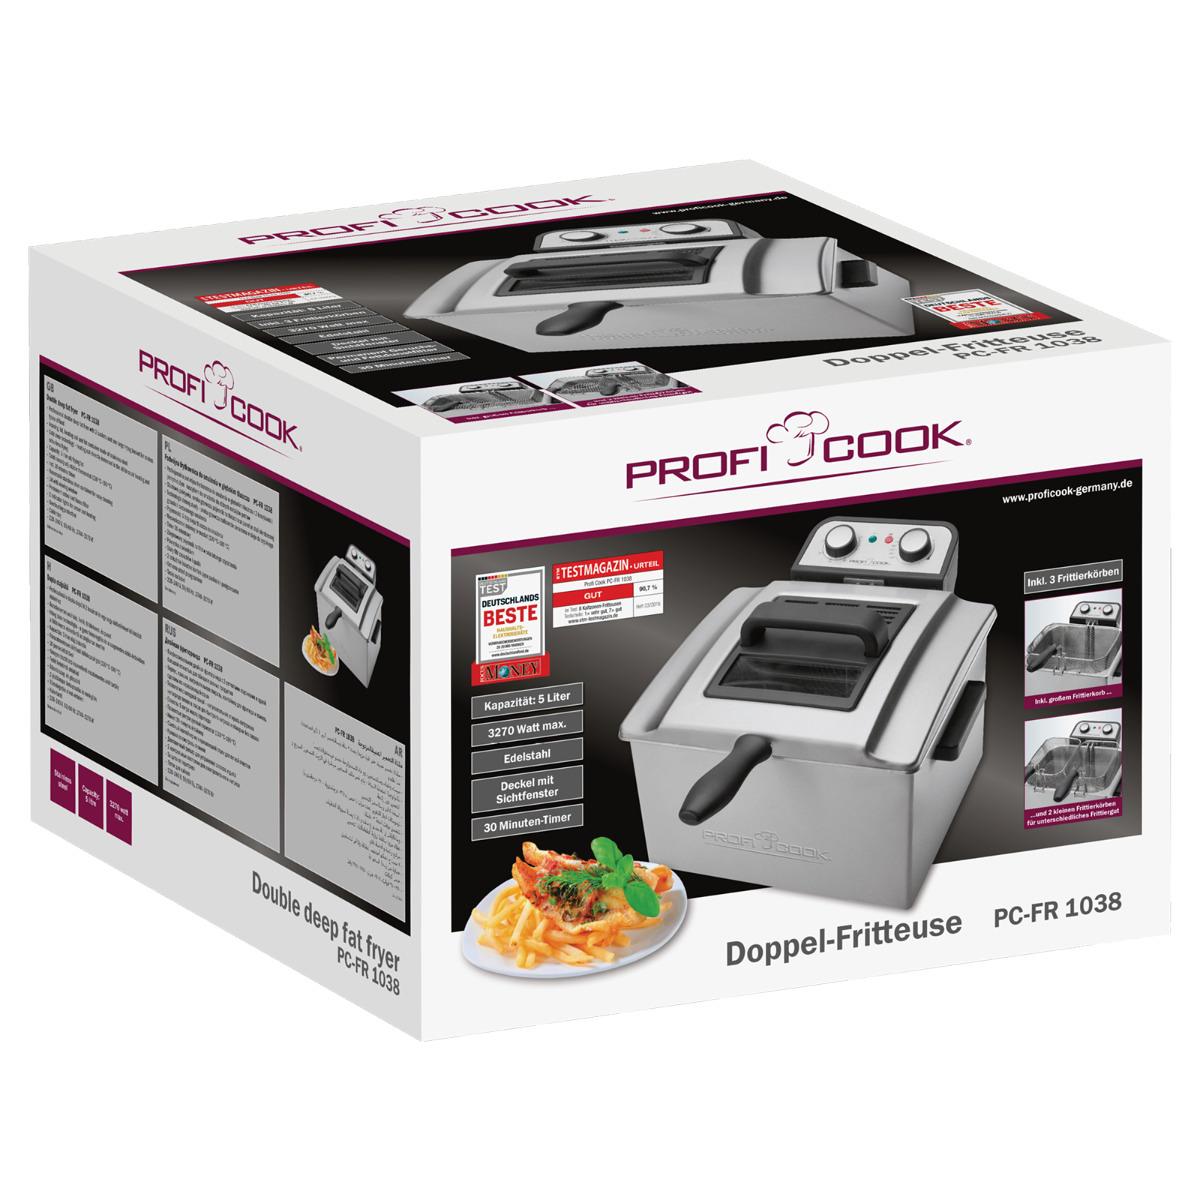 ProfiCook PC-FR 1038 Doppel-Fritteuse, 5 L, 3000 W, 30-Minuten-Timer,  stufenlos, 2 Kontrollleuchten, inox (501038) Elektroshop Wagner